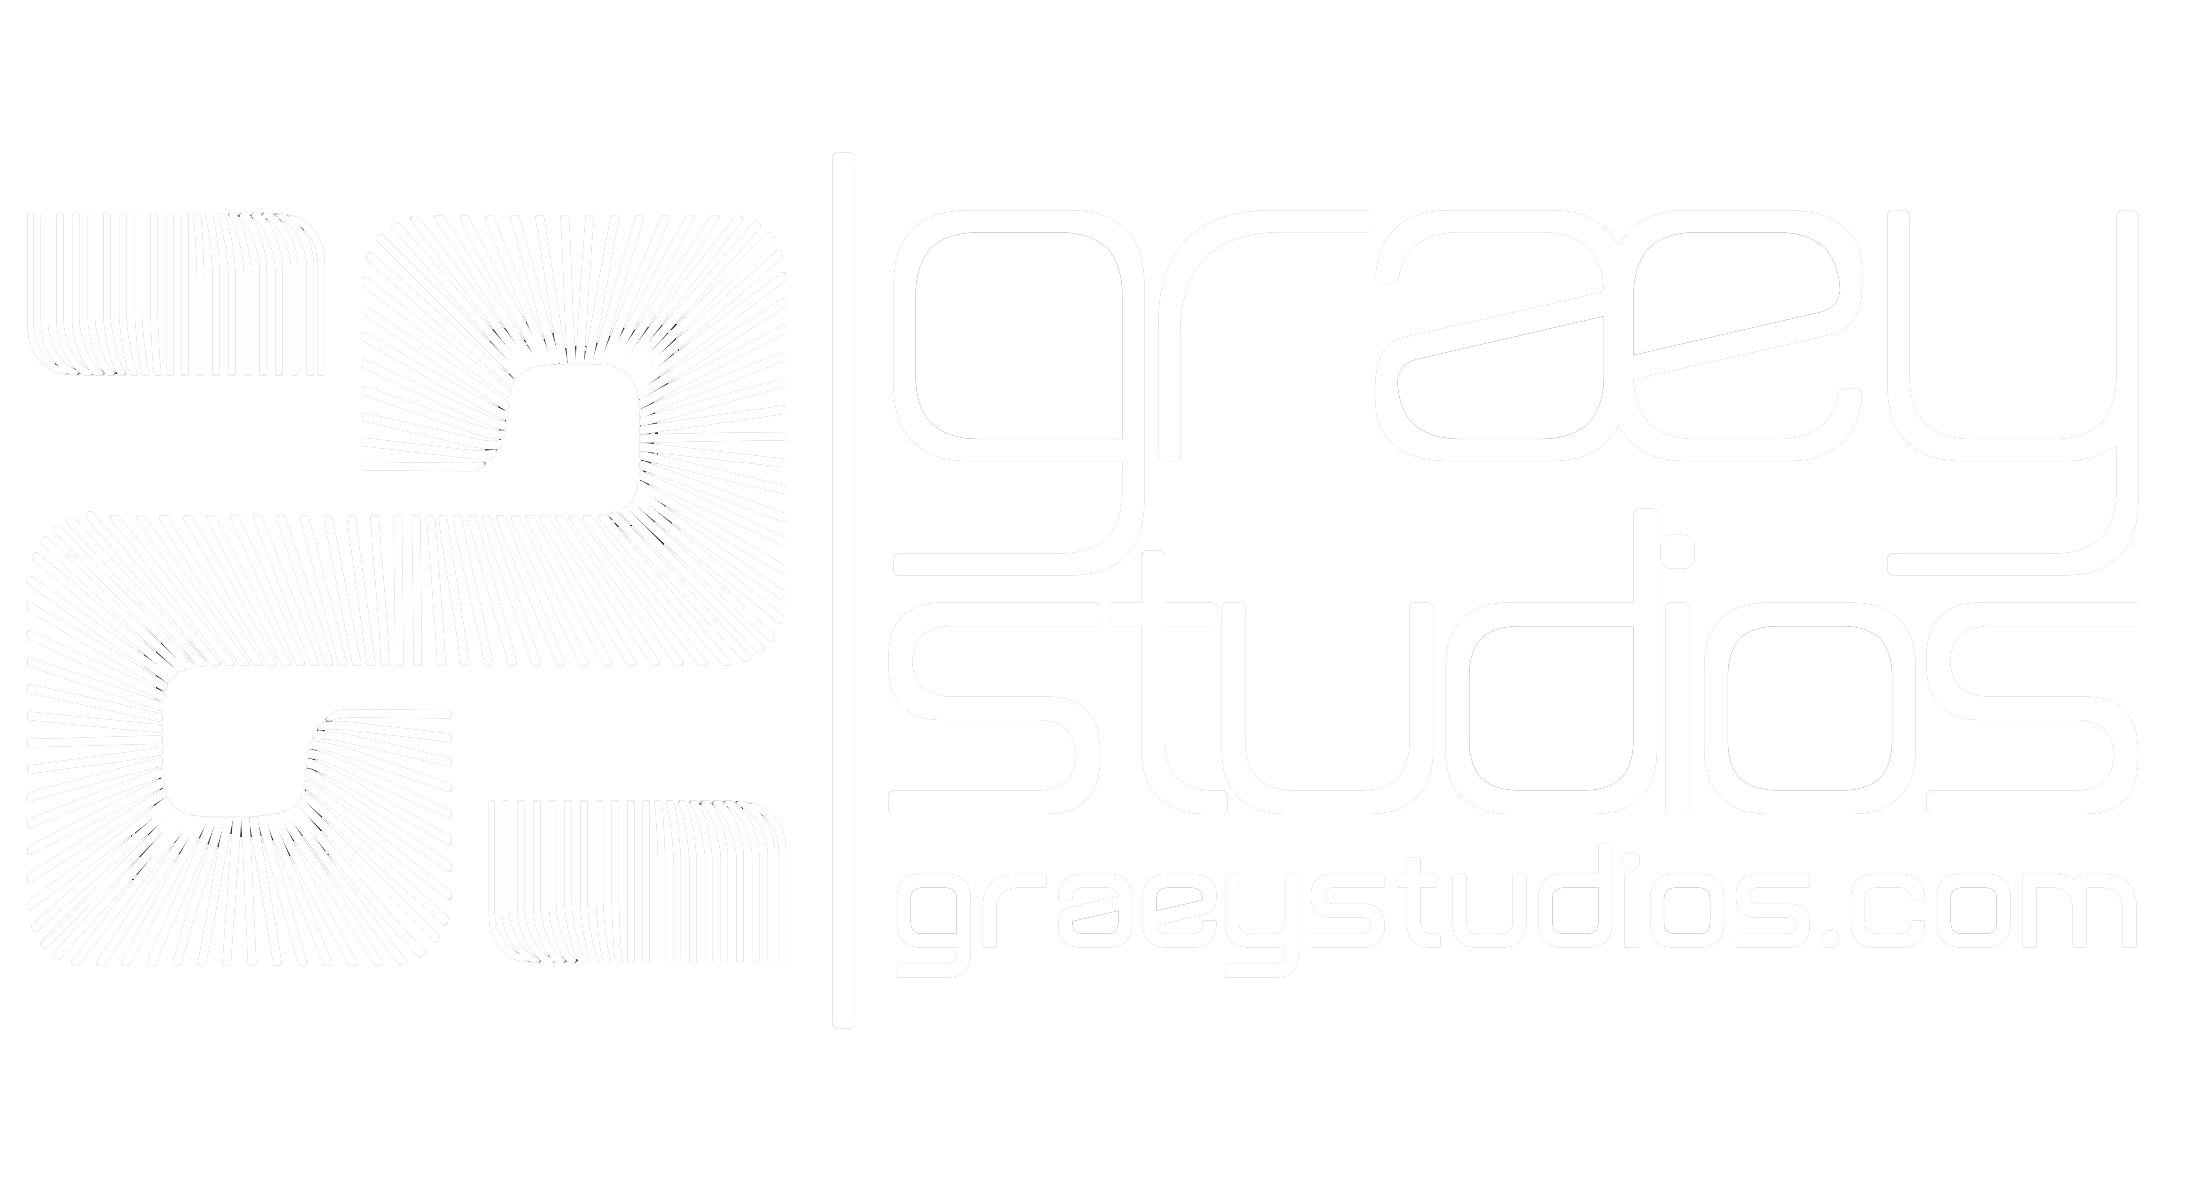 Graey Studios